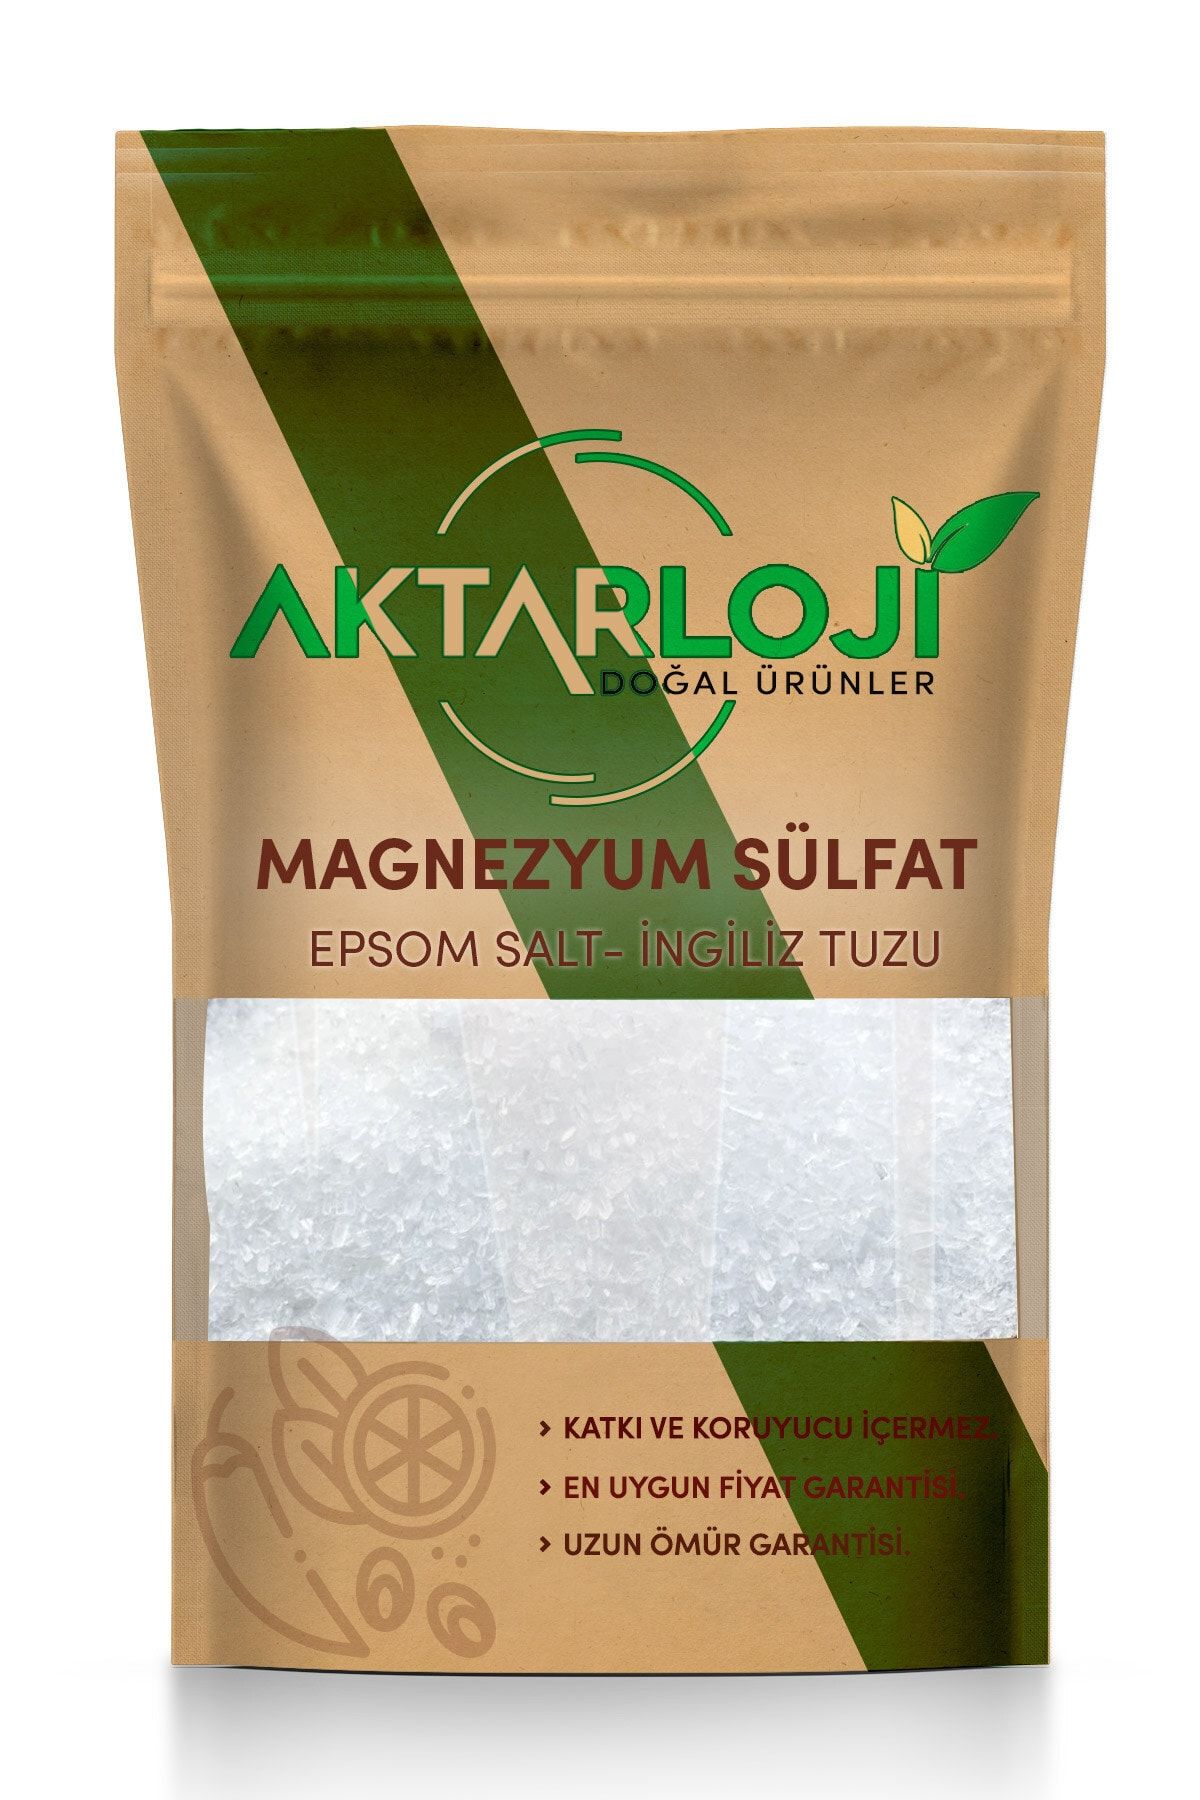 aktarloji 4 kg Magnezyum Sülfat, Ingiliz Tuzu, Epsom Salt (yenilebilir)